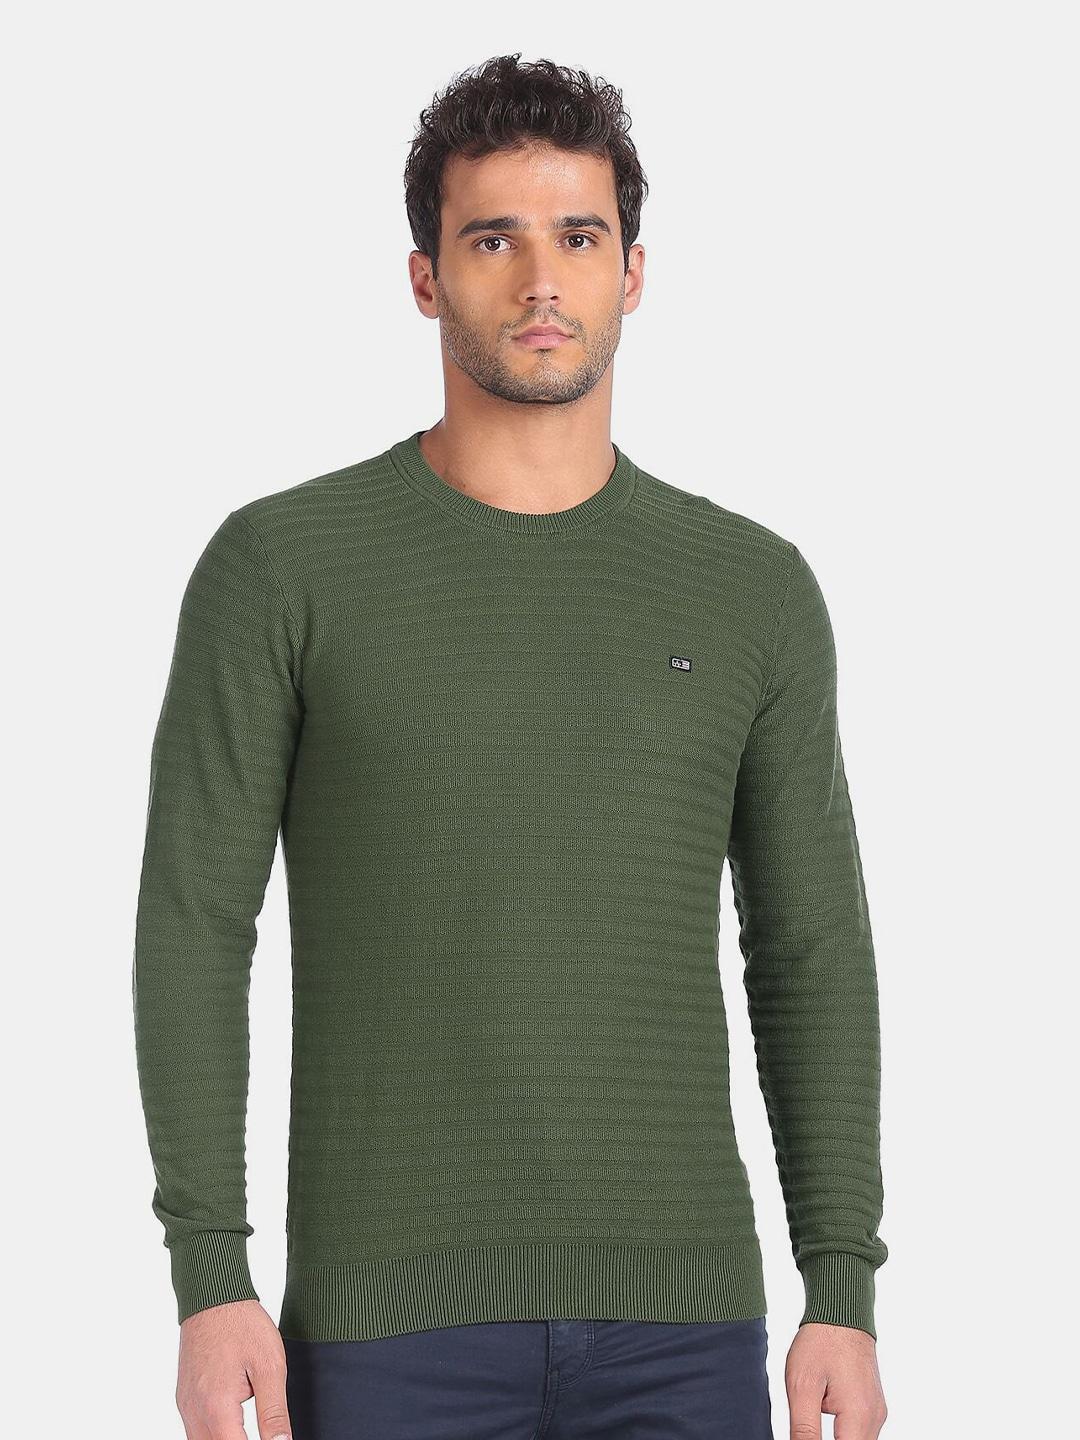 arrow-sport-men-green-striped-pure-cotton-pullover